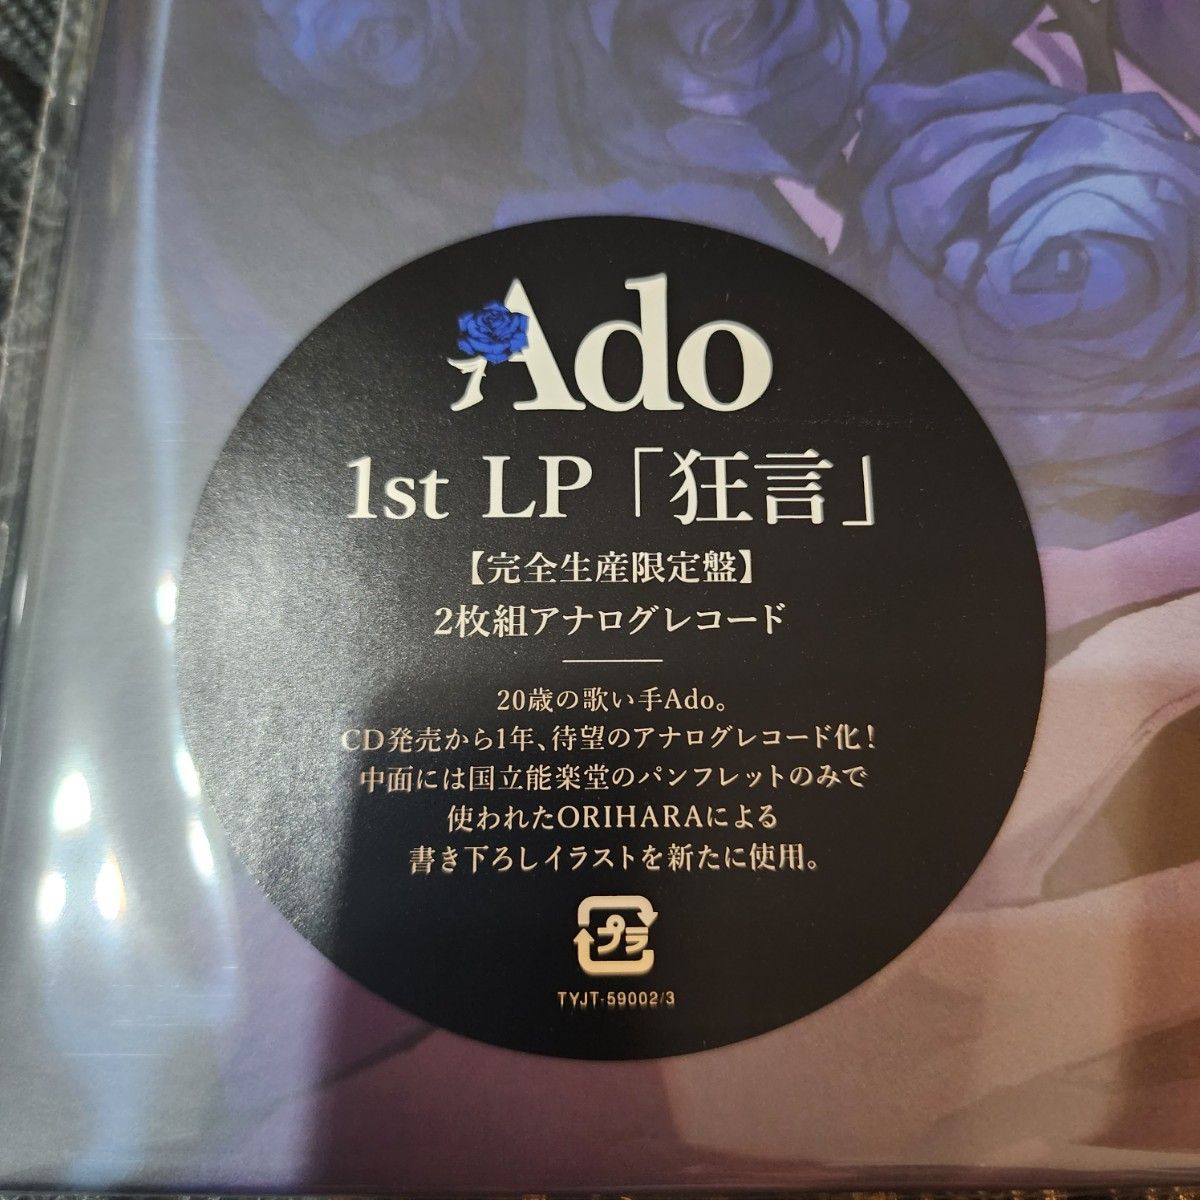 【新品・未開封】Ado 狂言 完全生産限定盤 アナログレコード LP